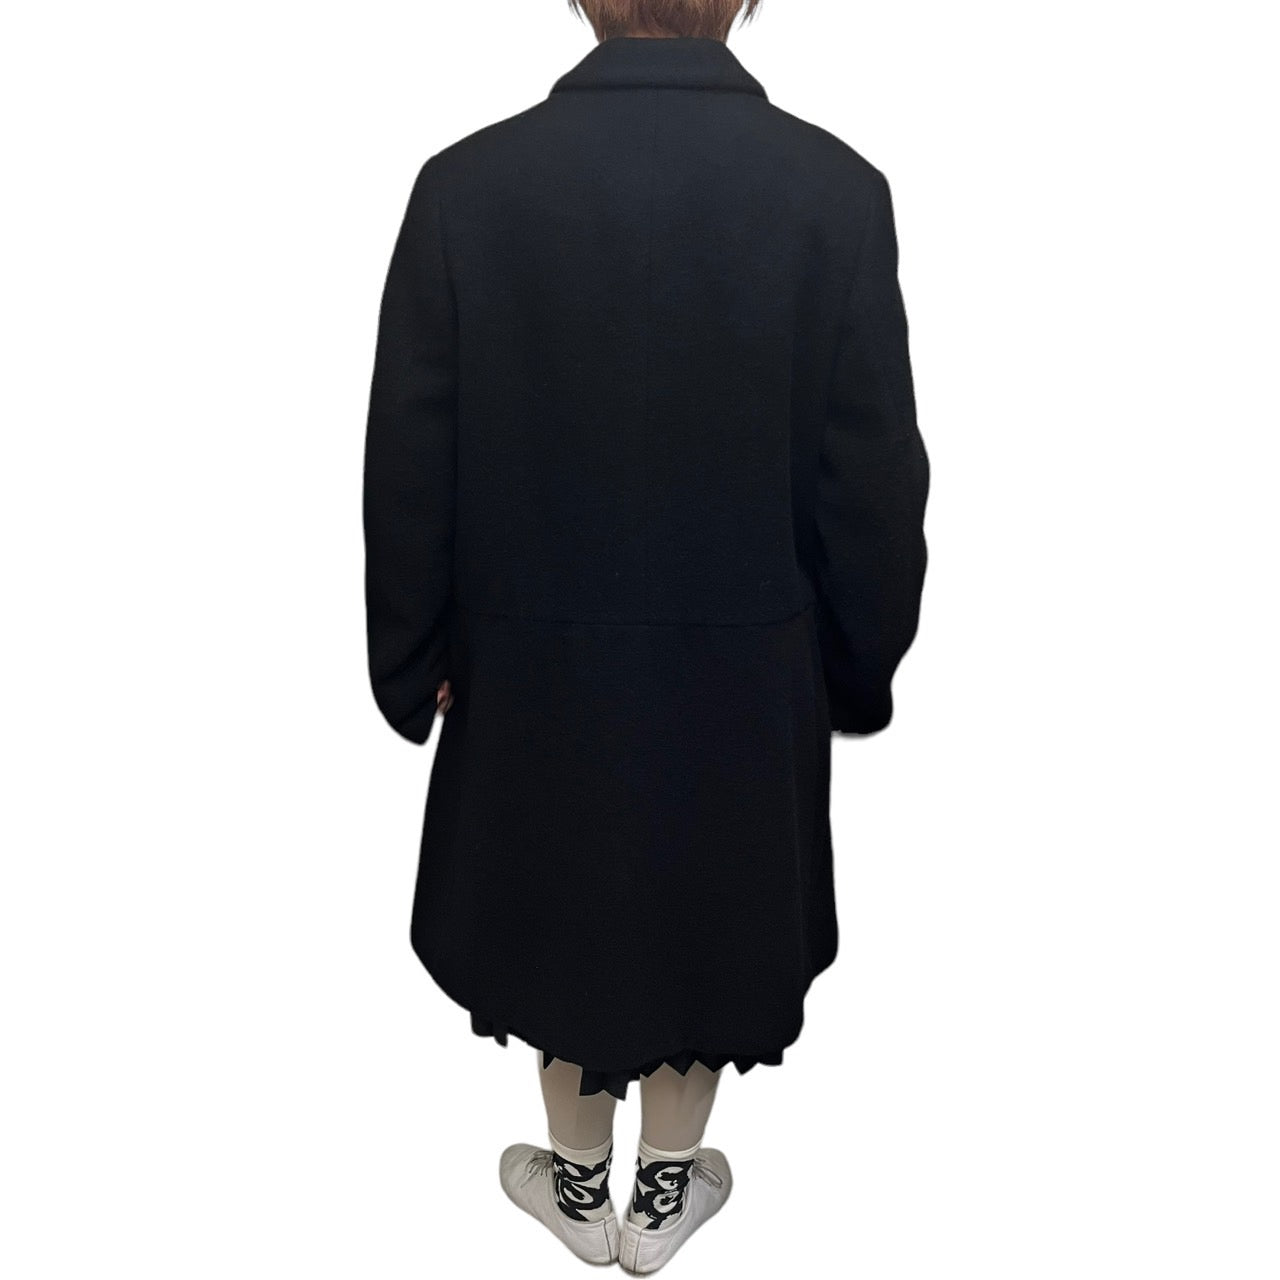 robe de chambre COMME des GARCONS(ローブドシャンブルコムデギャルソン) 90's切替4Bウールコート RC-040030 表記なし(M～L程度) ブラック AD1995